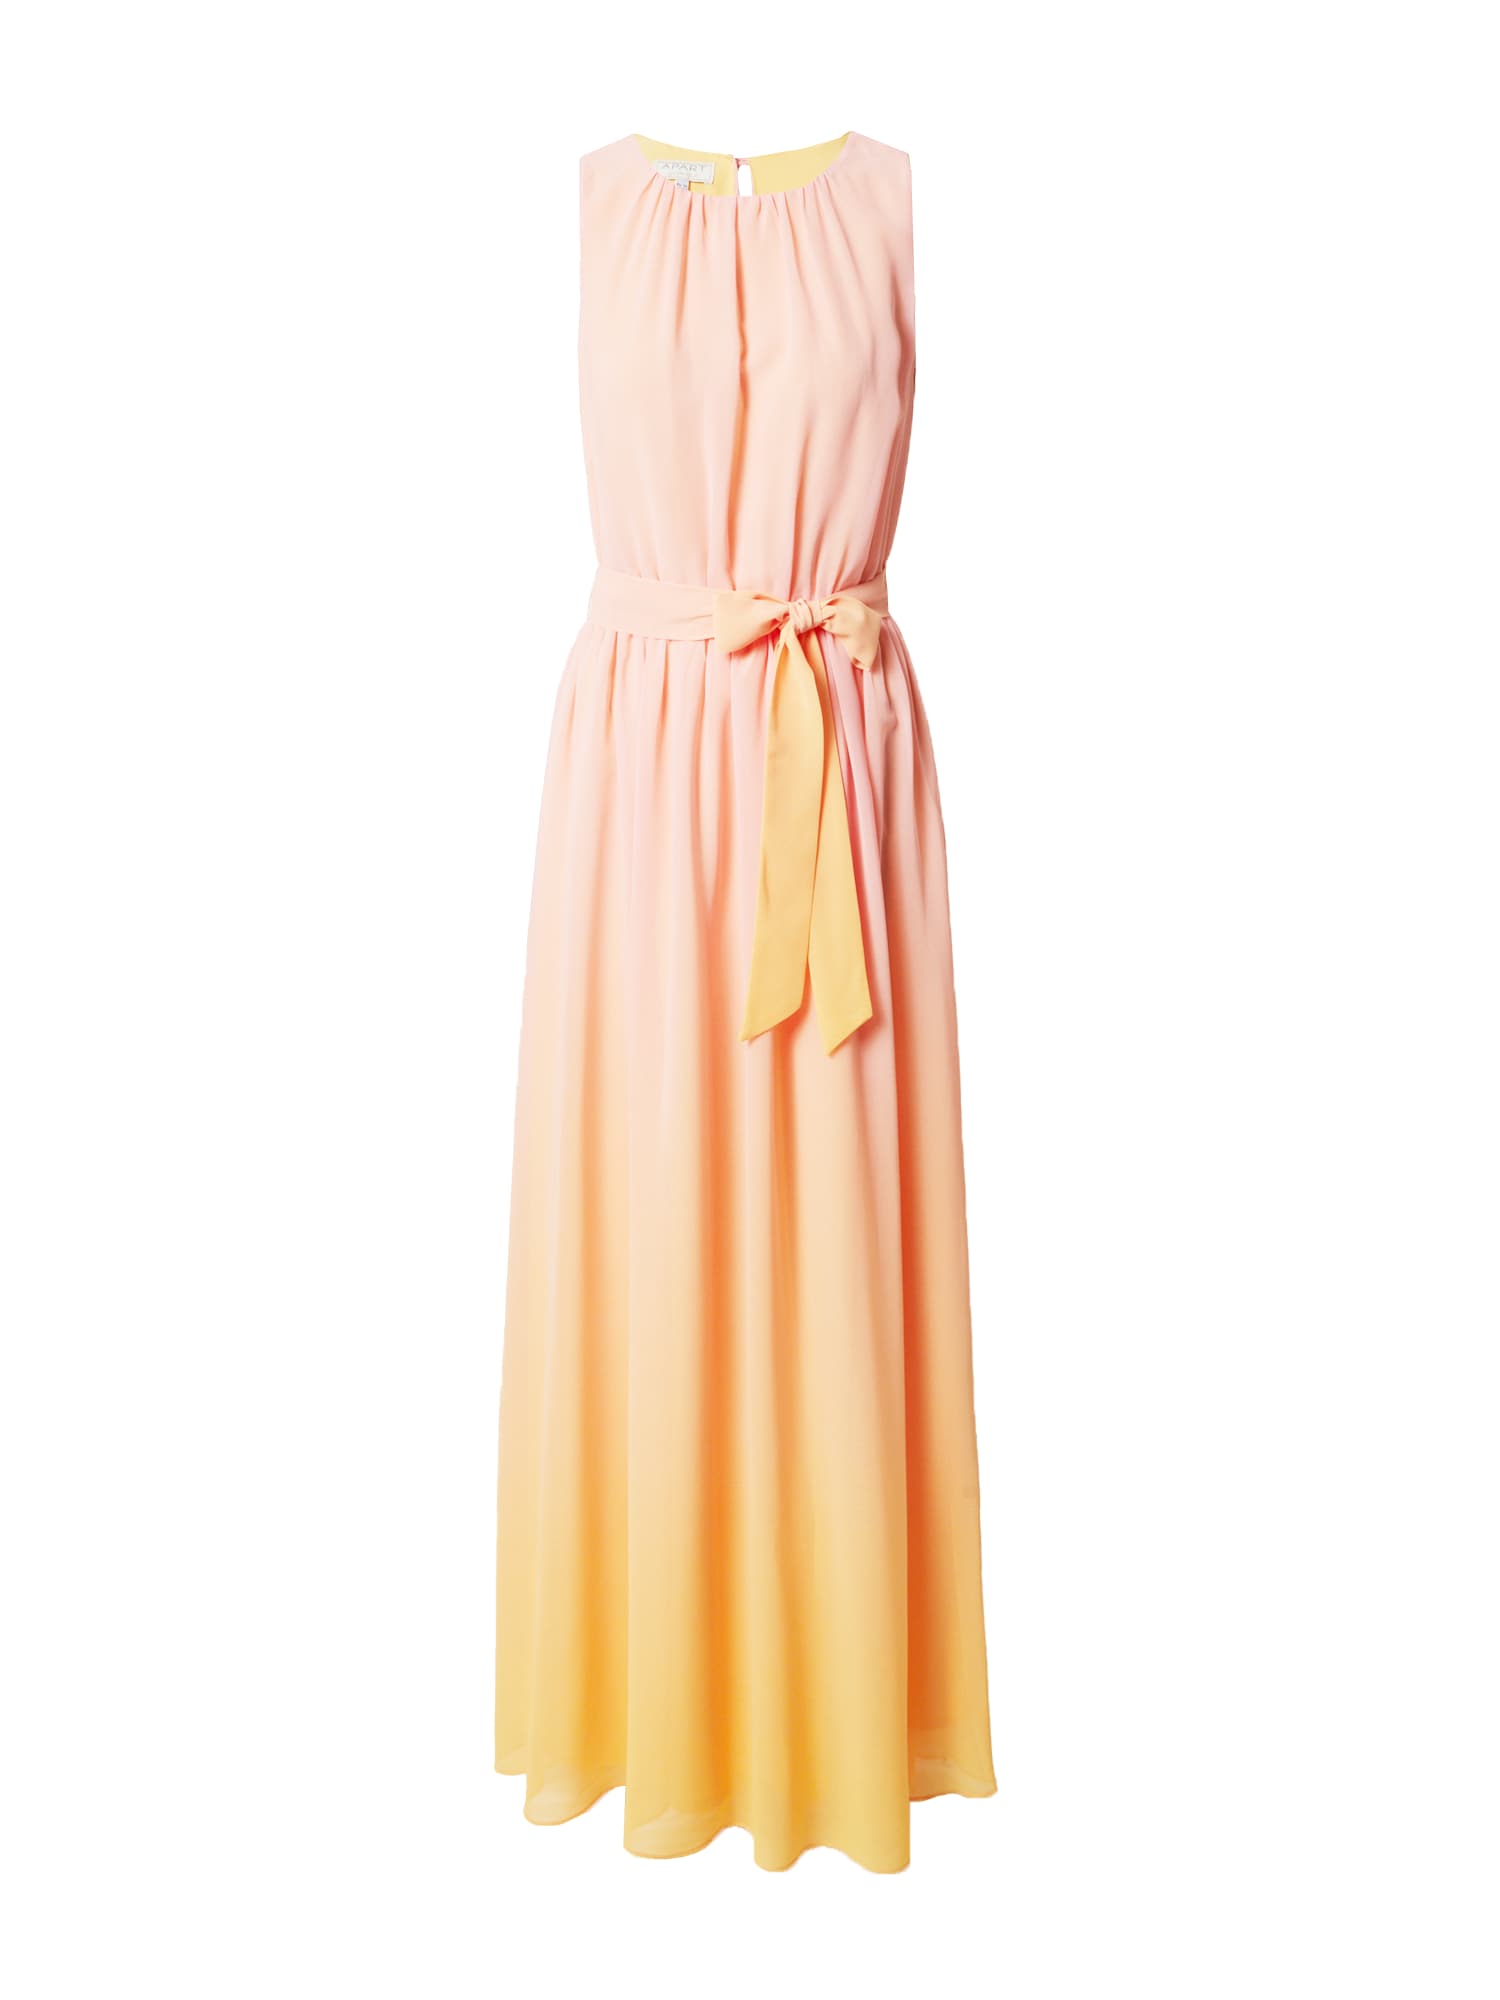 APART Vakarinė suknelė geltona / abrikosų spalva / ryškiai rožinė spalva